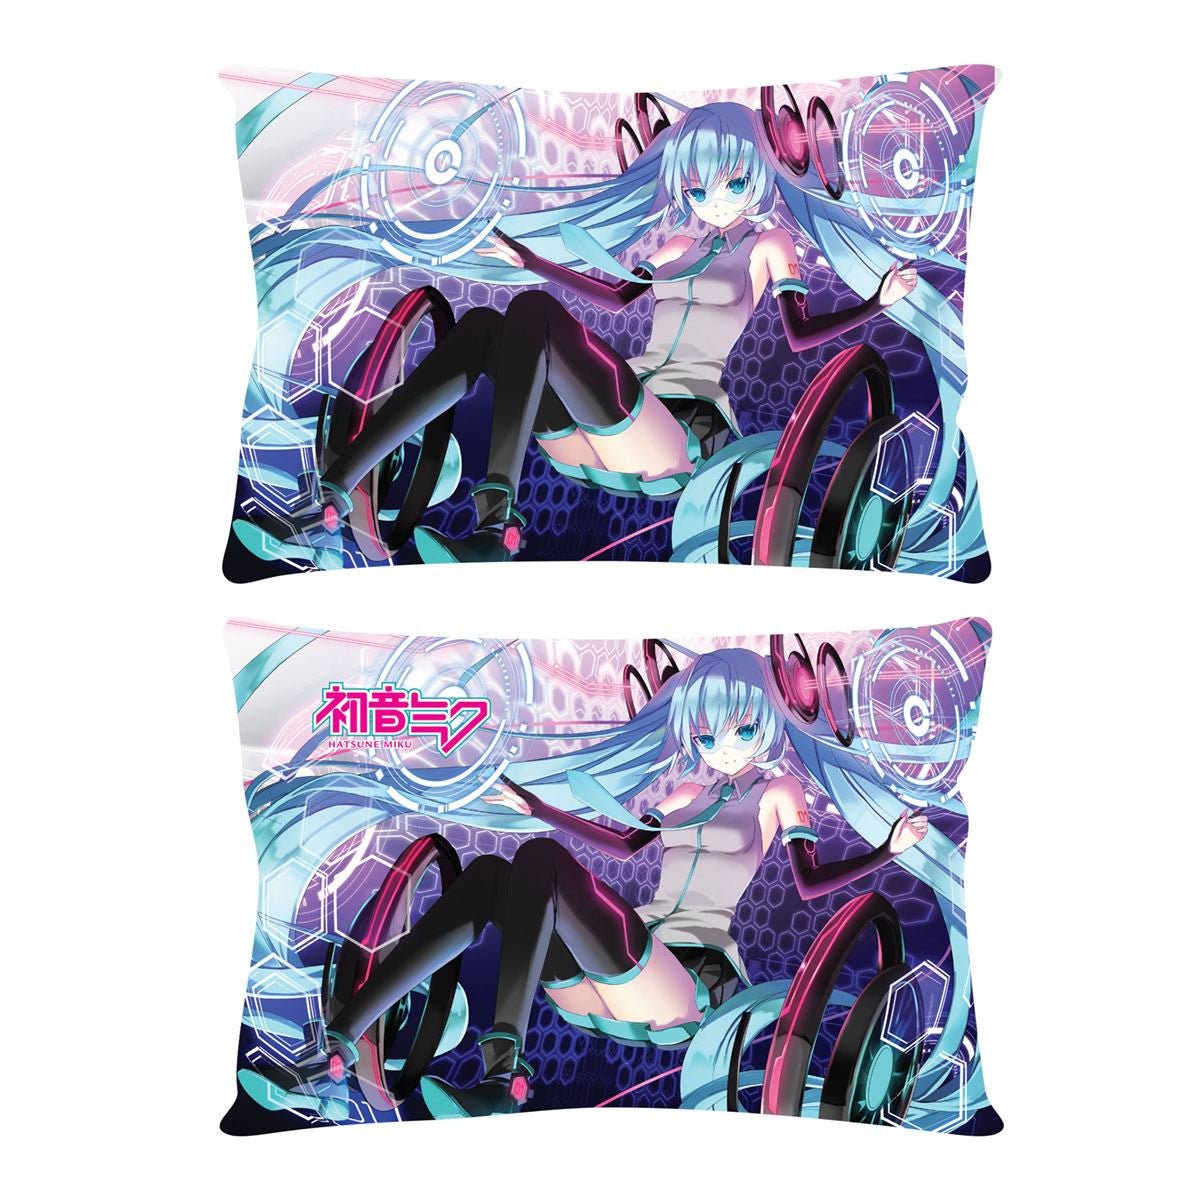 Hatsune Miku - pillow - Miku VR (Pop Buddies)